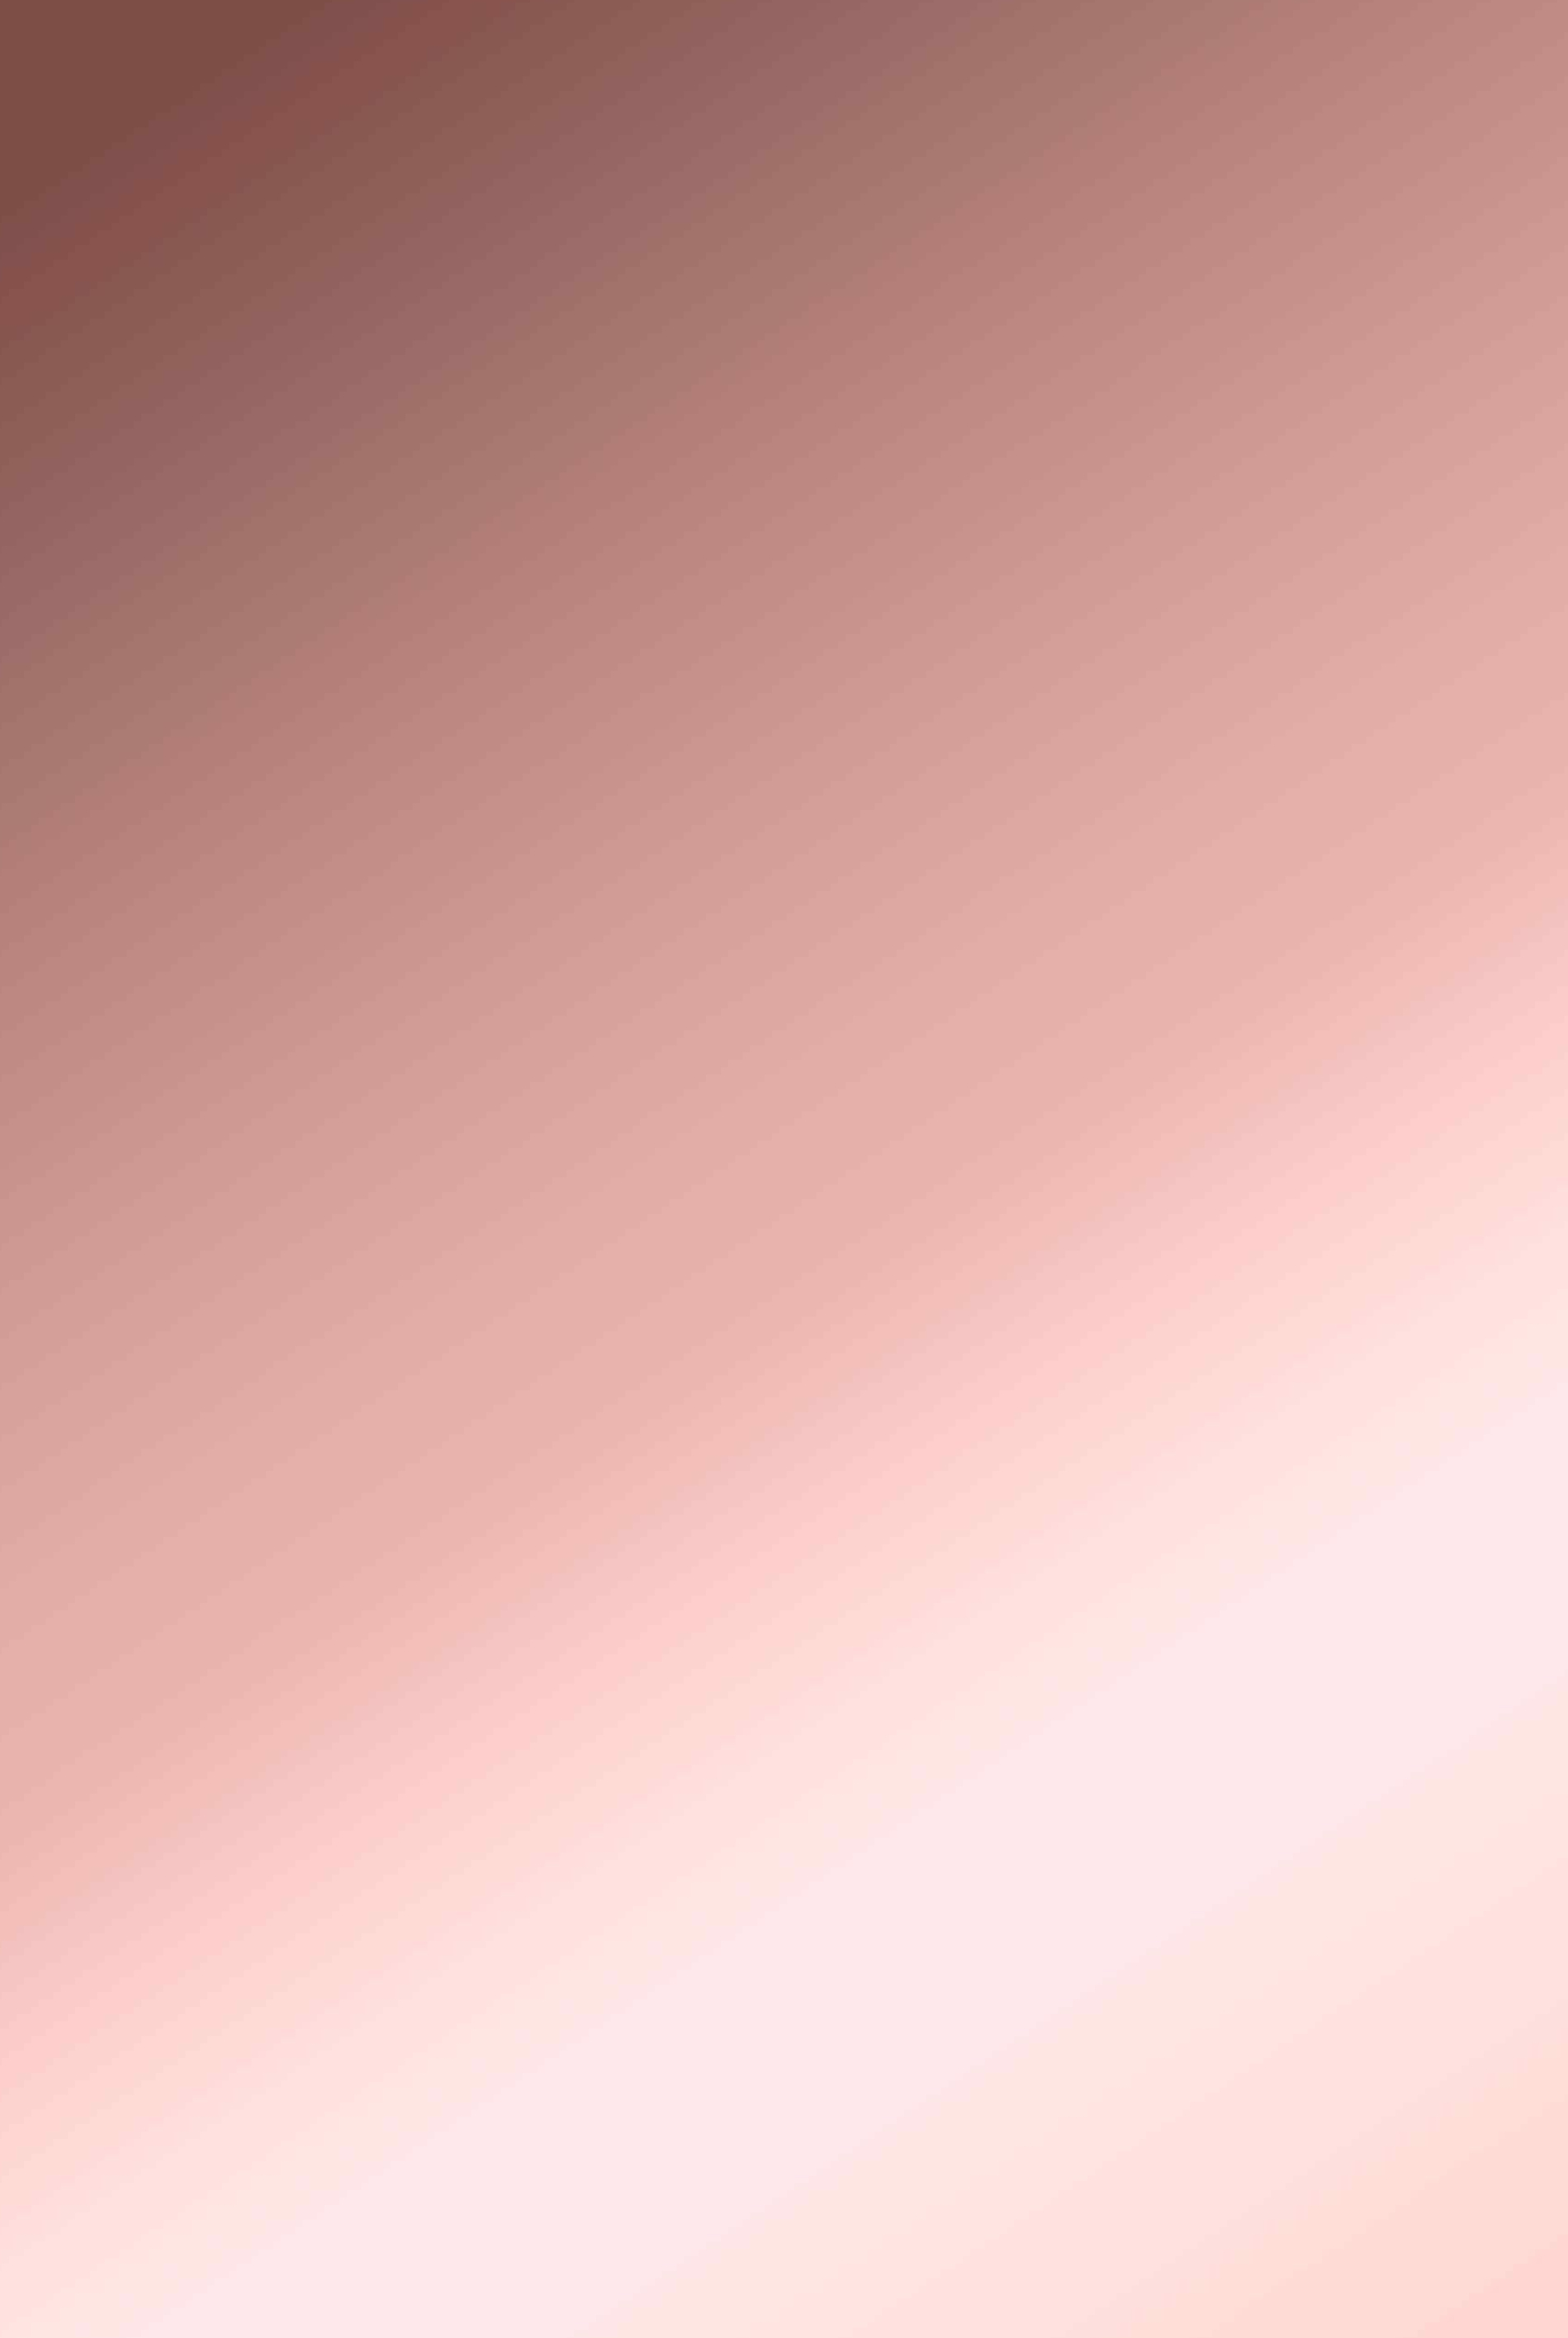 1899x2831 Closeup wallpapers beautiful rose gold background iphone 6 pink rose closeup iphone wallpa&acirc;&#128;&brvbar; | Rose gold wallpaper, Gold wallpaper, Still life photography